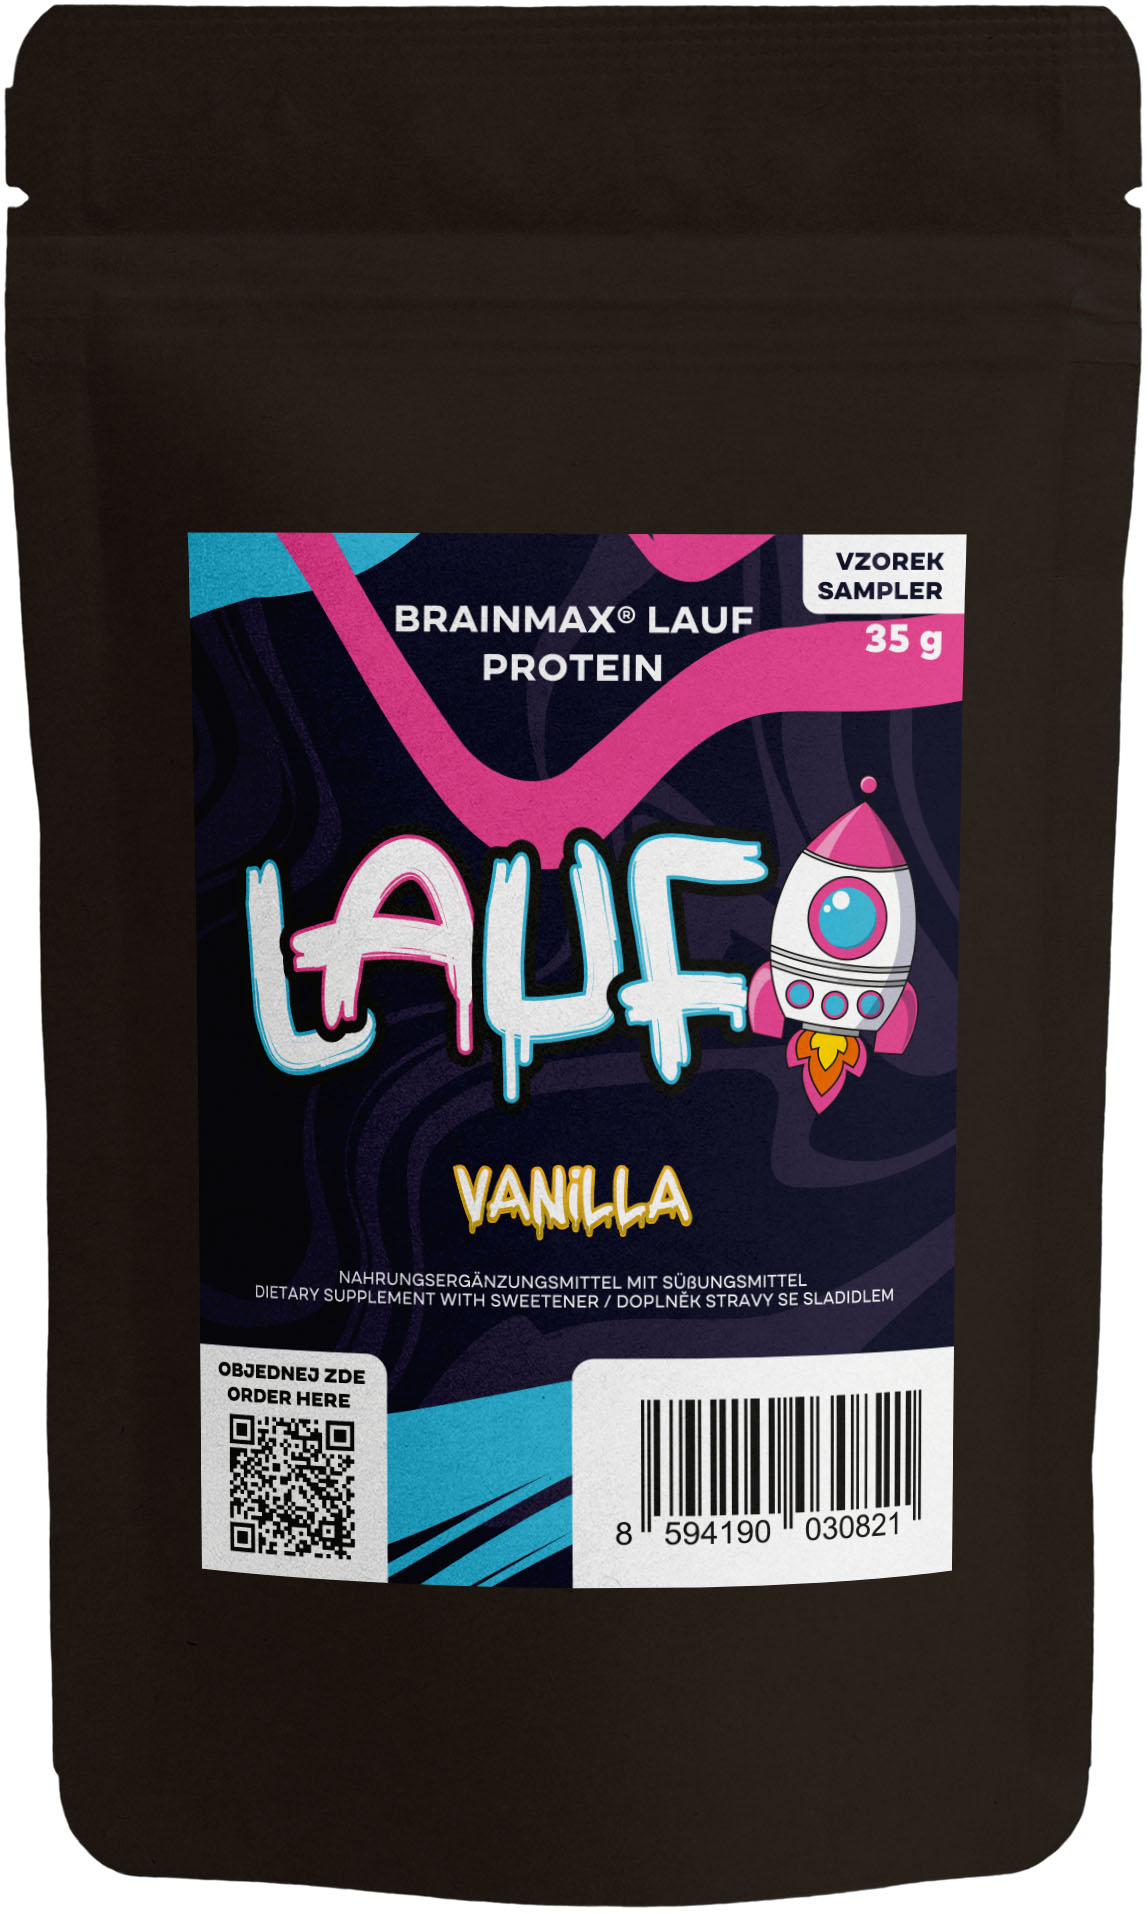 BrainMax LAUF Protein, nativní syrovátkový protein, 35 g, VZOREK Příchuť: Vanilka Nativní syrovátkový protein, doplněk stravy